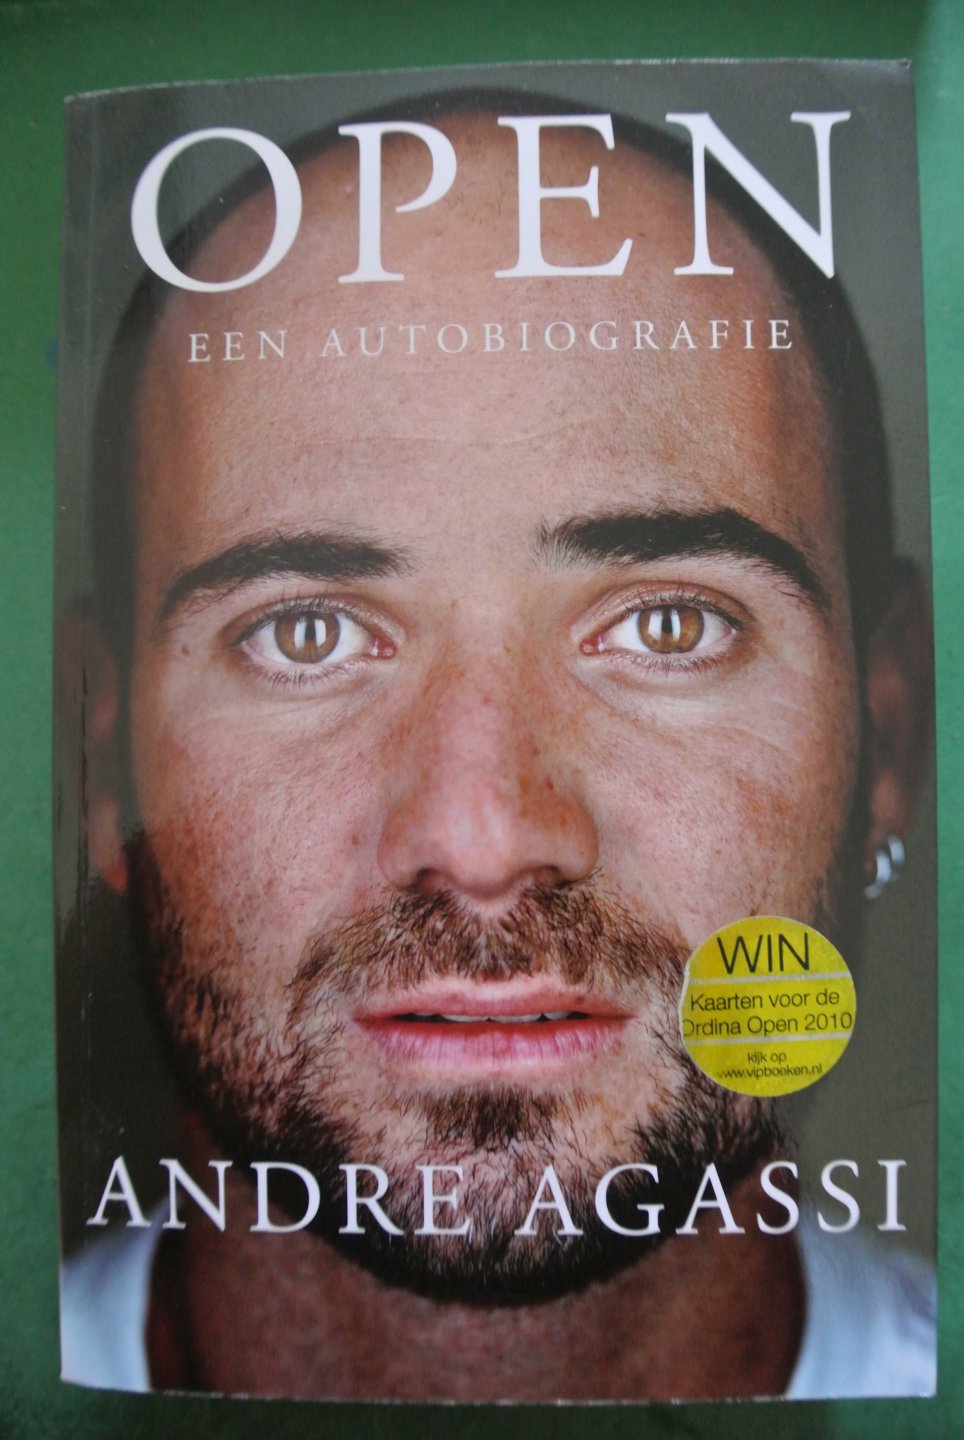 Agassi, Andre - OPEN Een autobiografie